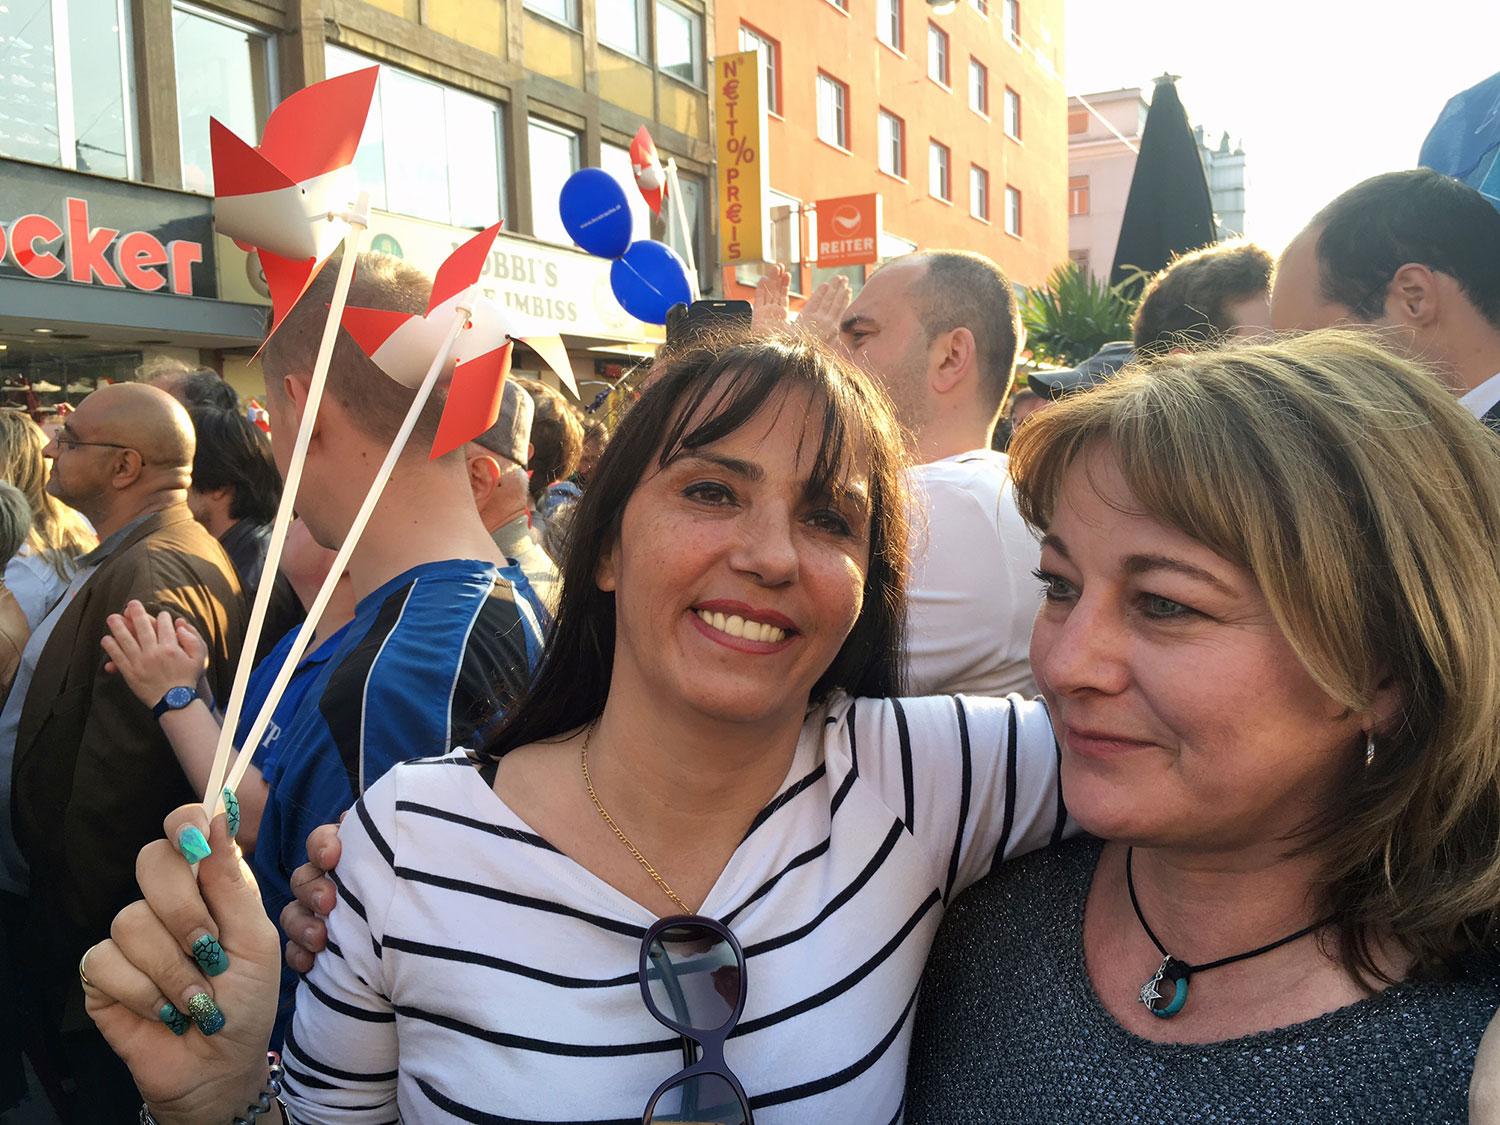 FPÖ-supportrar Manuela och Silvi tycker båda att Hofer är super.